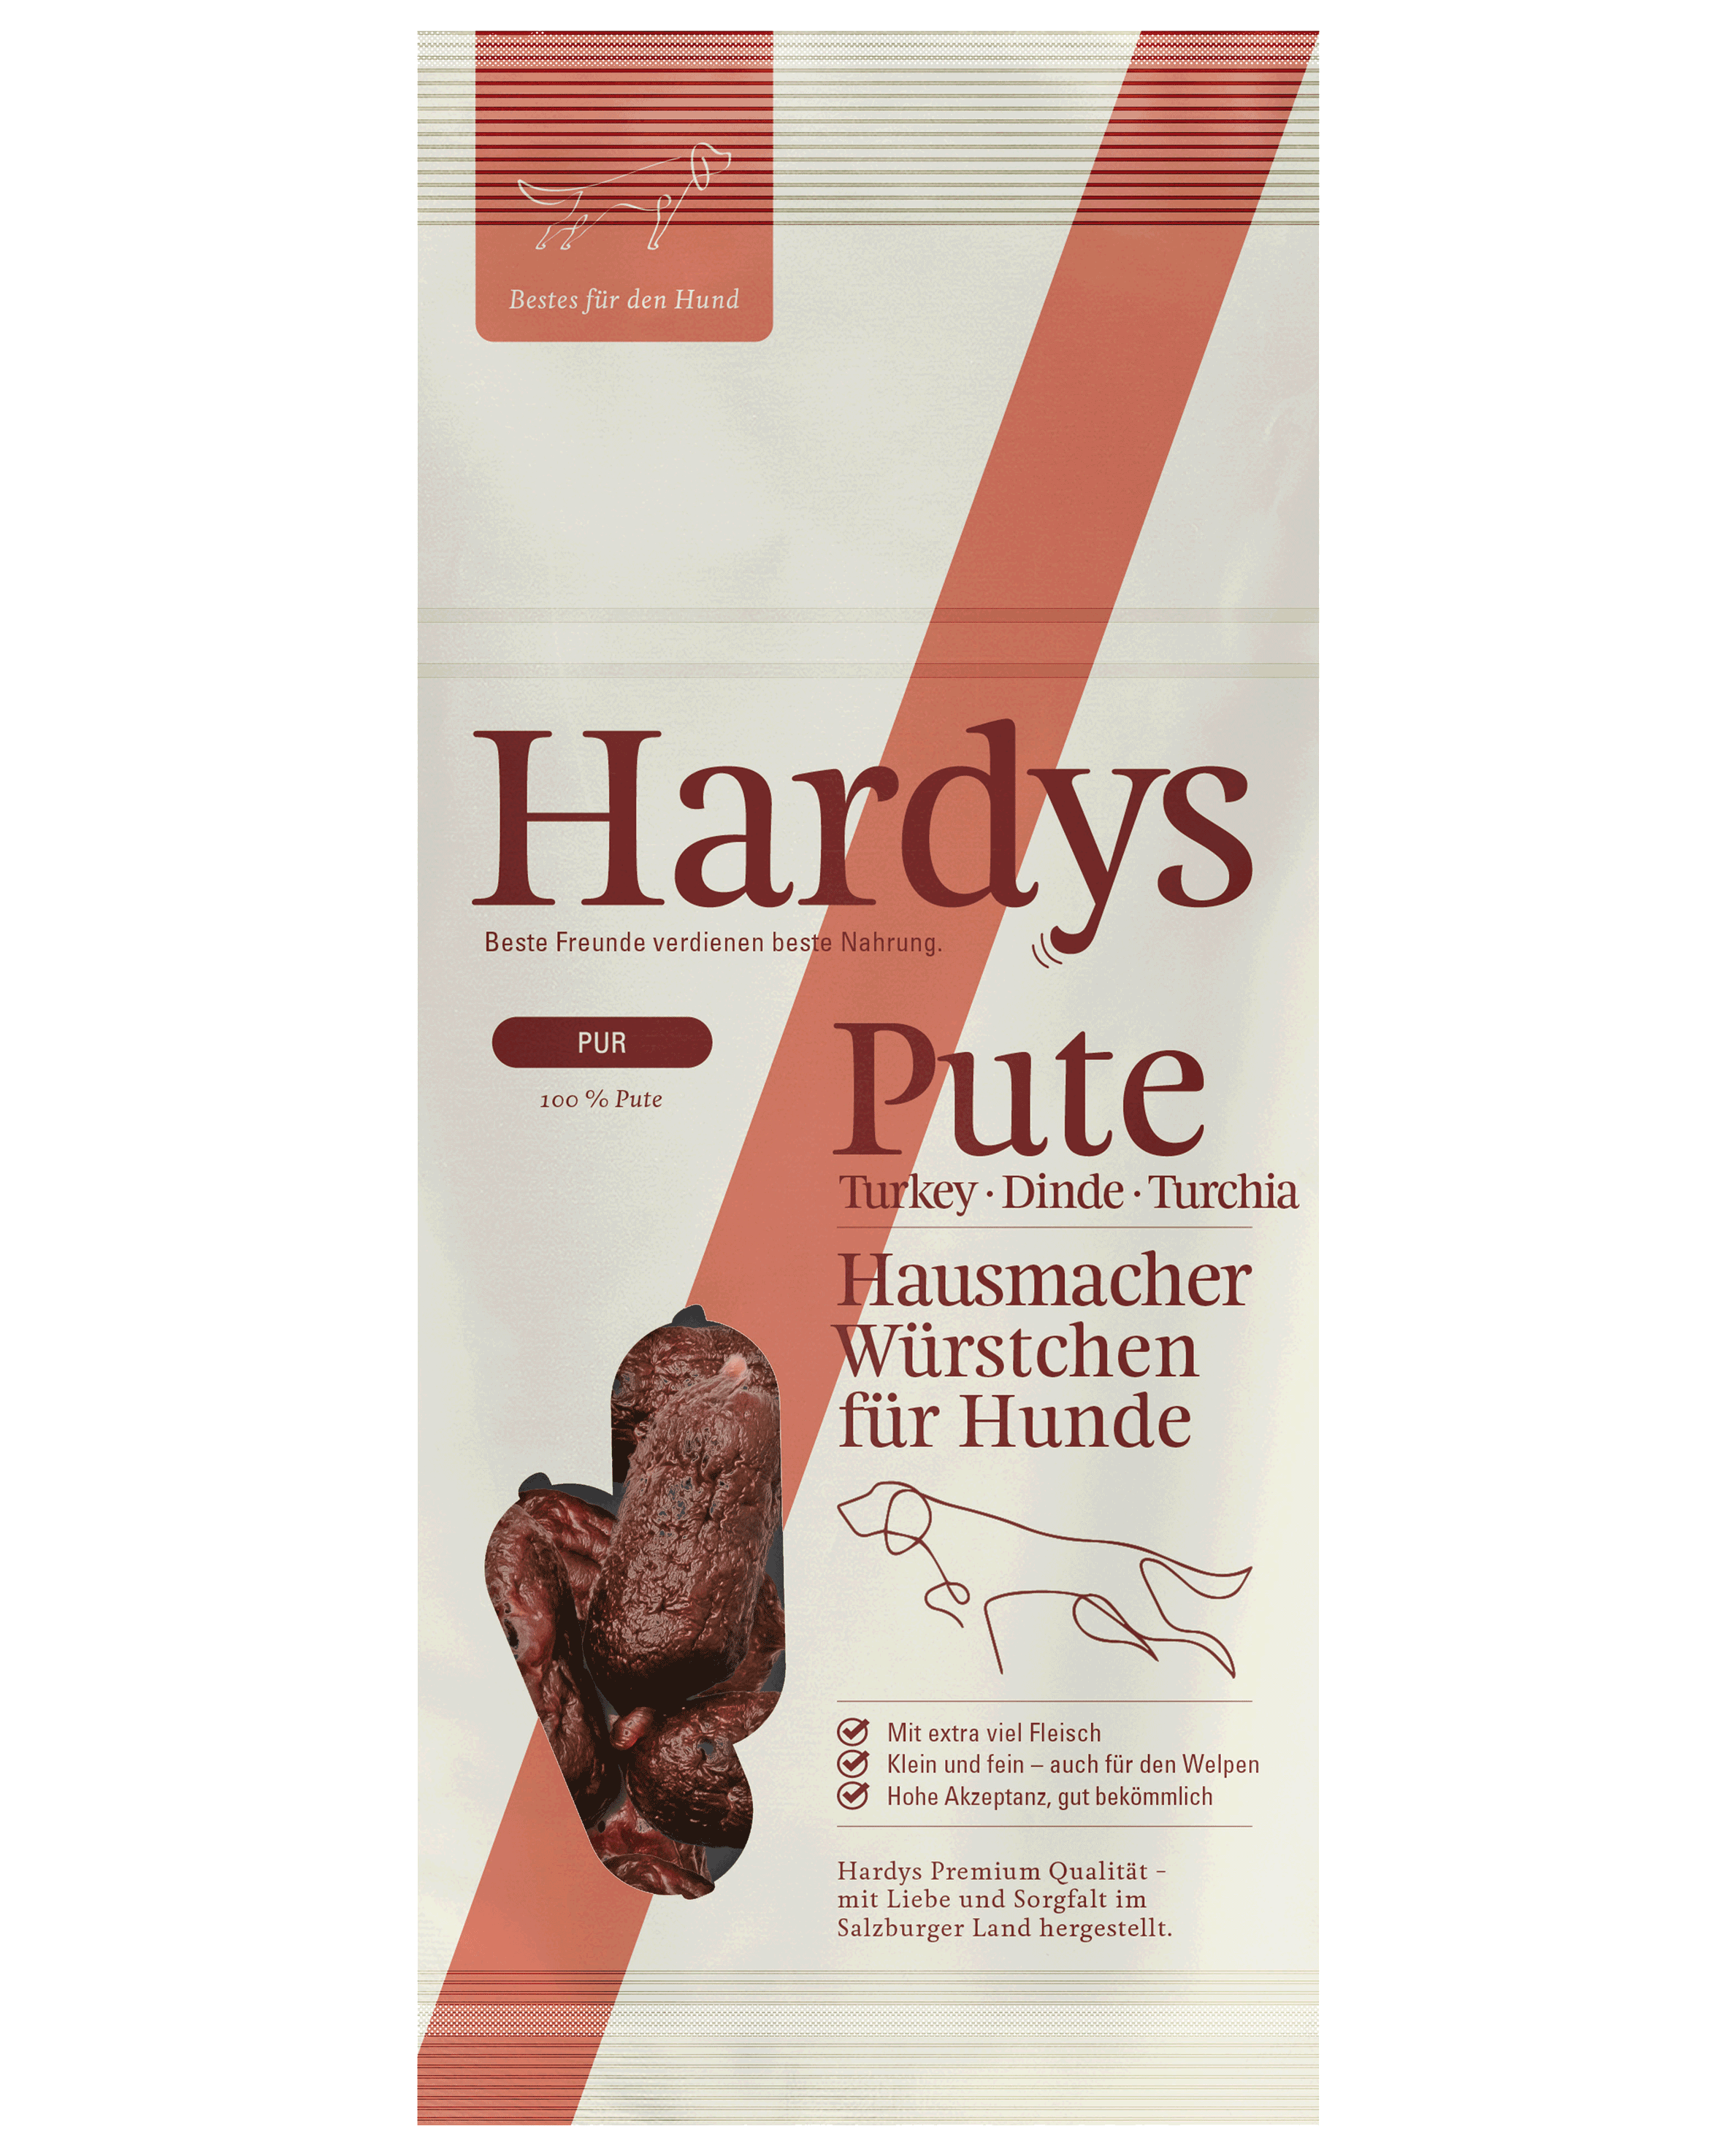 Hardys Pur Pute Hausmacher Würstchen, 80 g